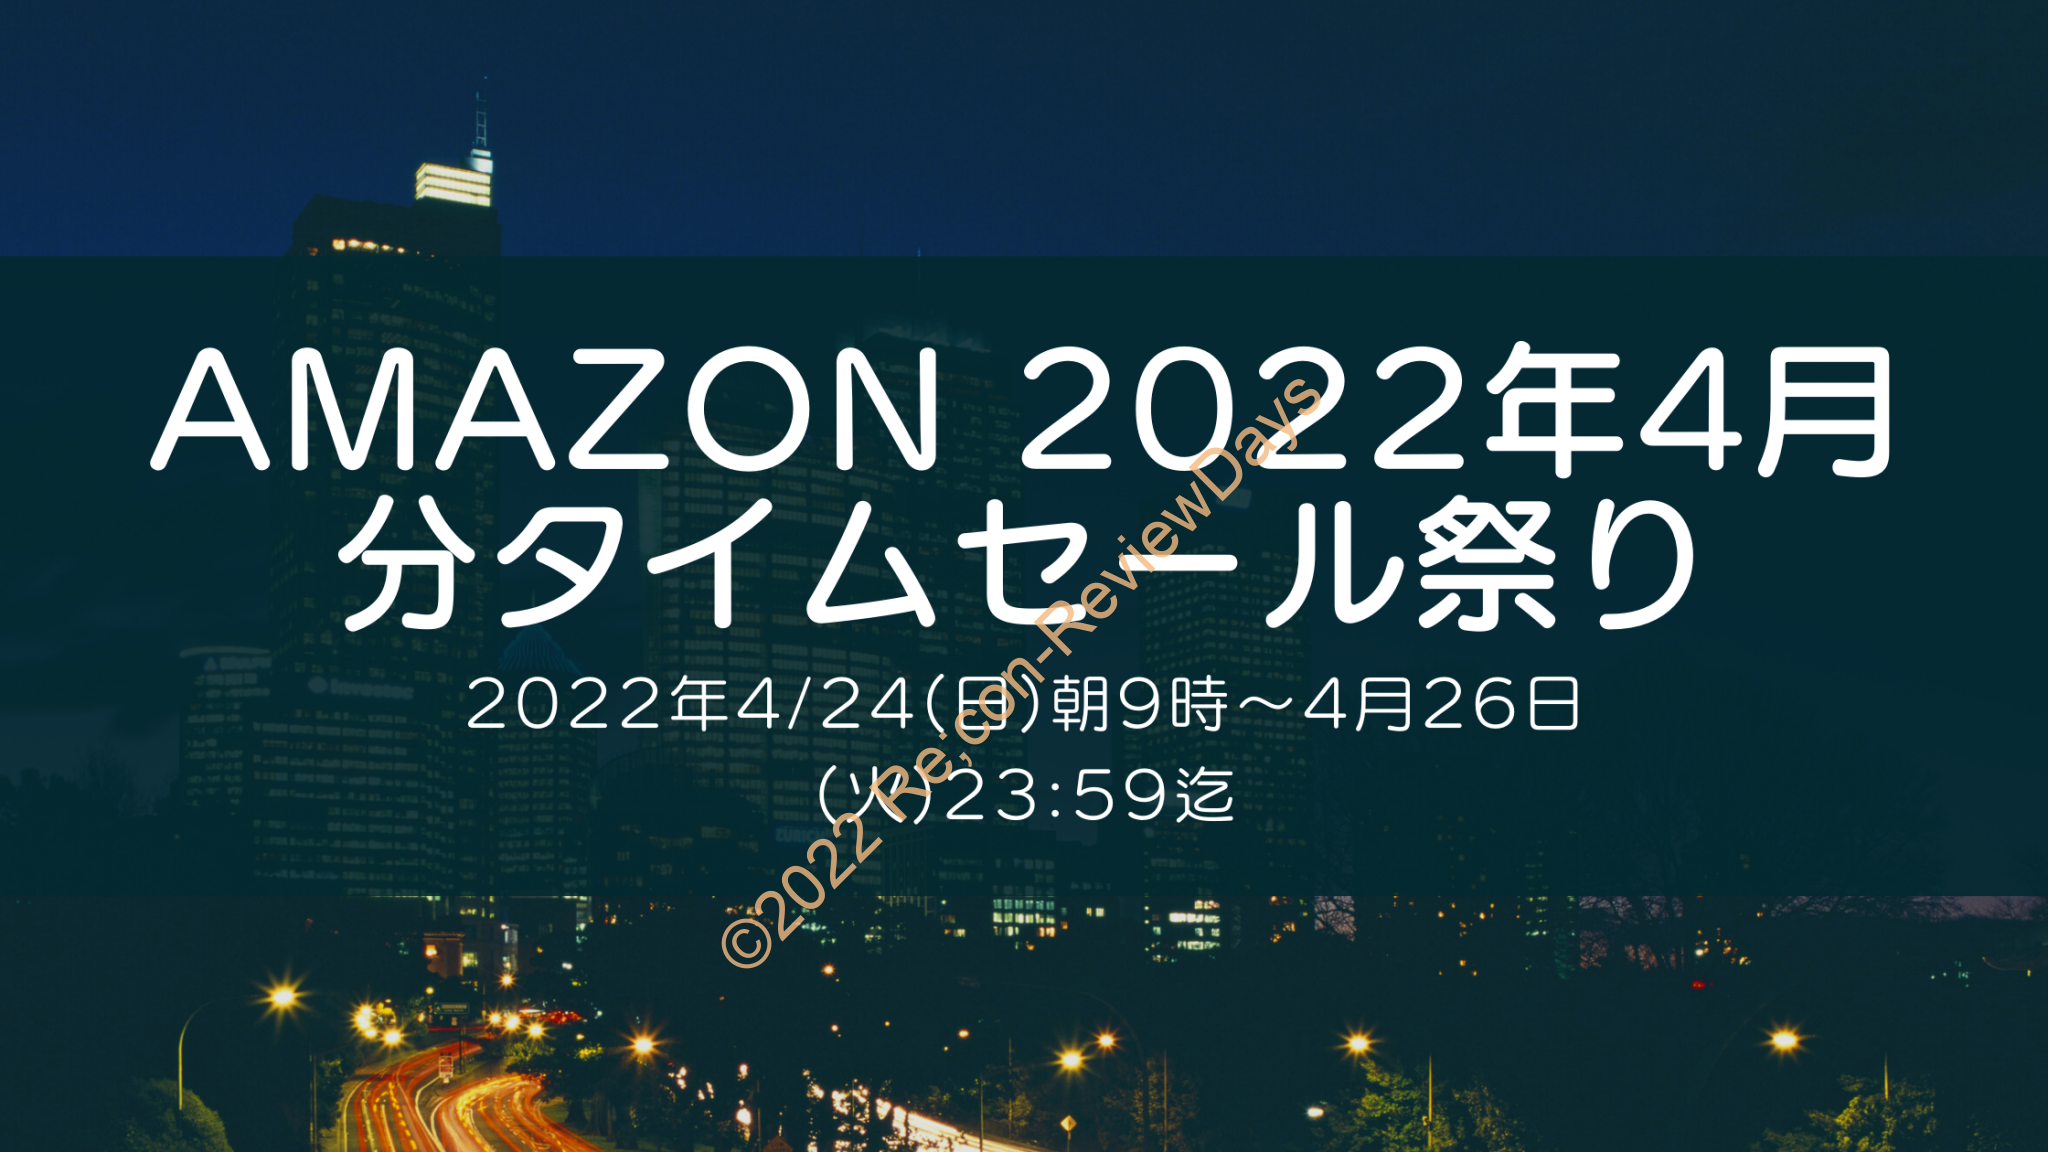 Amazonにて2022年4月実施分の「63時間のビッグセール タイムセール祭り」を4月24日(日)朝9時から約3日間開催 #Amazon #アマゾン #セール #特価 #タイムセール #タイムセール祭り